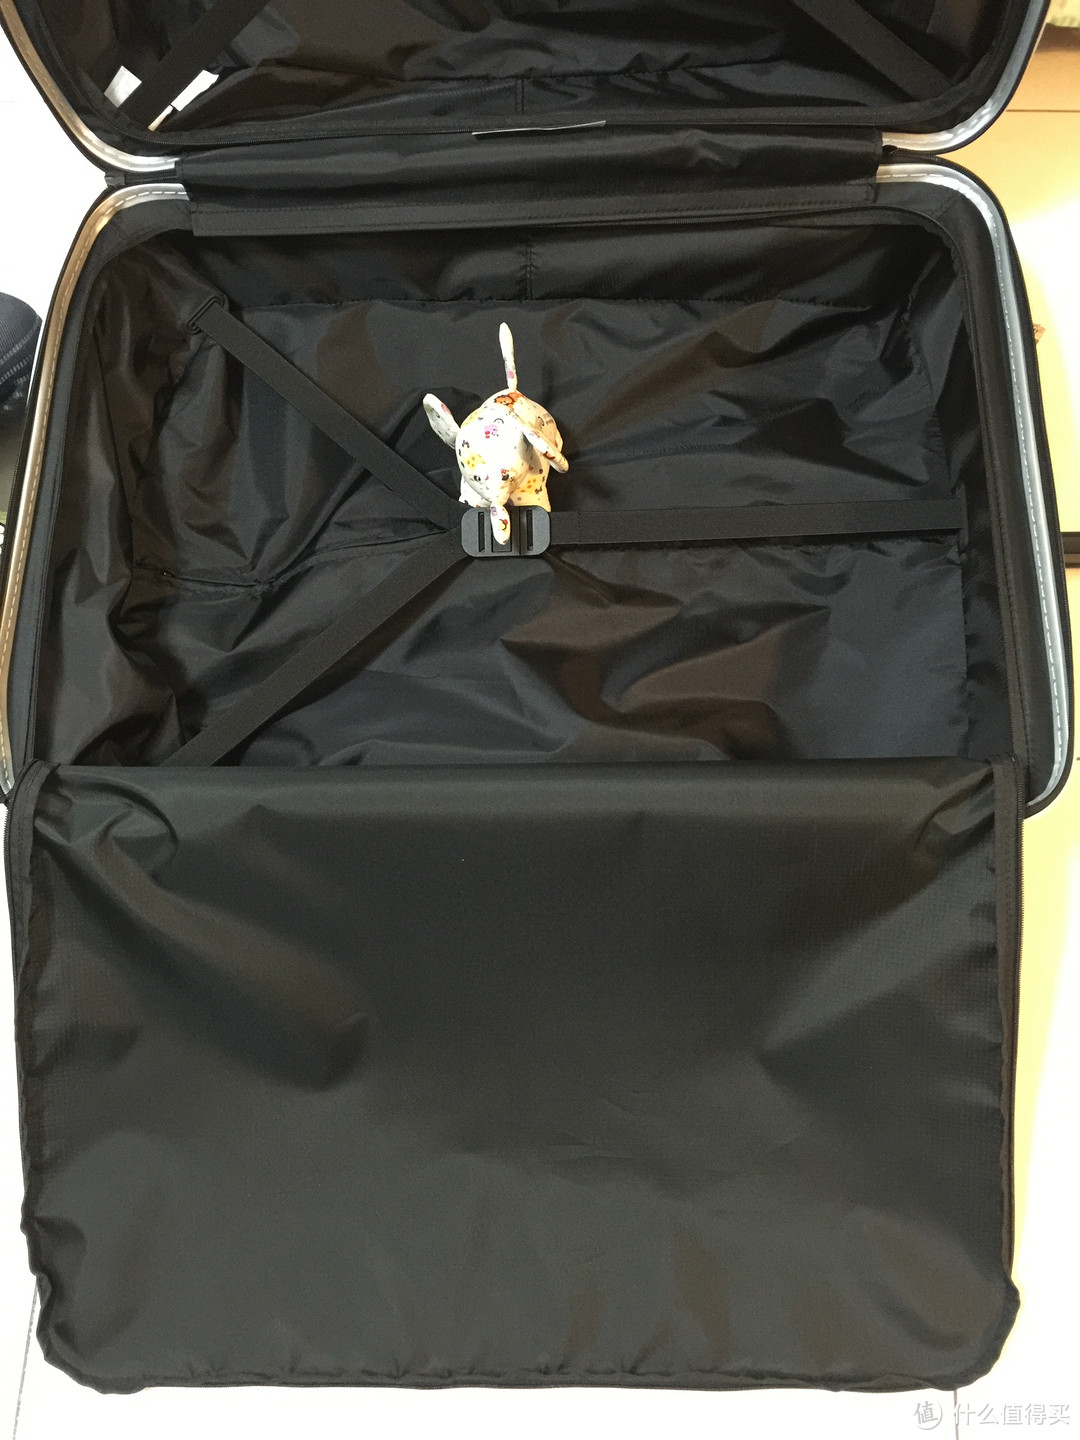 高冷商务范：美亚海淘新秀丽 Luggage Inova Spinner 28寸拉杆箱